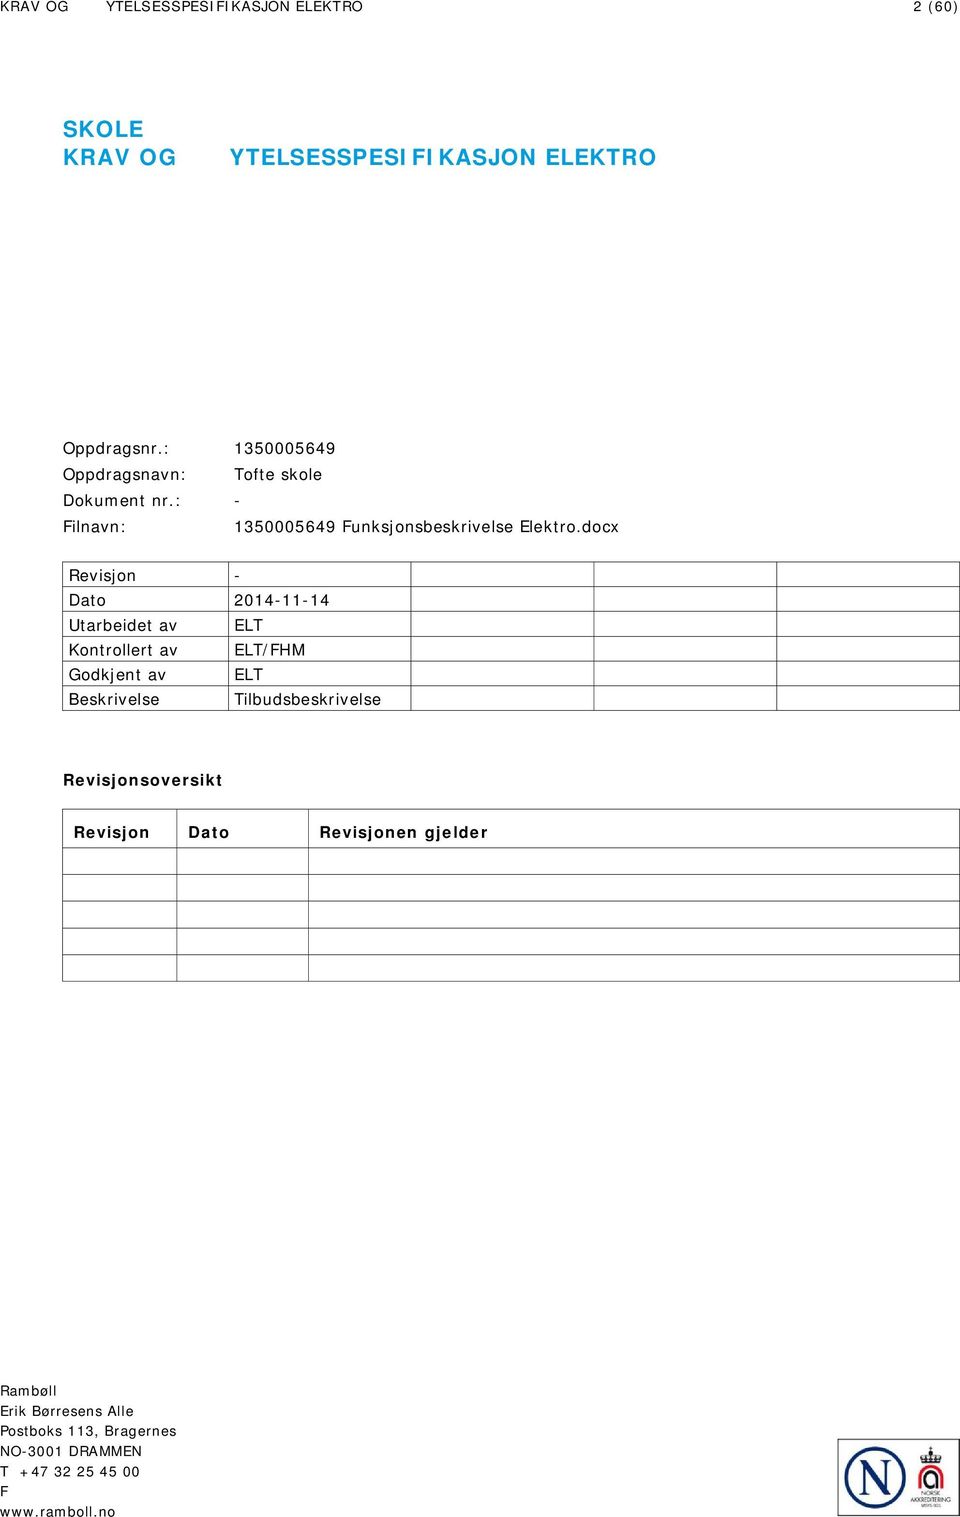 docx Revisjon - Dato 2014-11-14 Utarbeidet av ELT Kontrollert av ELT/FHM Godkjent av ELT Beskrivelse